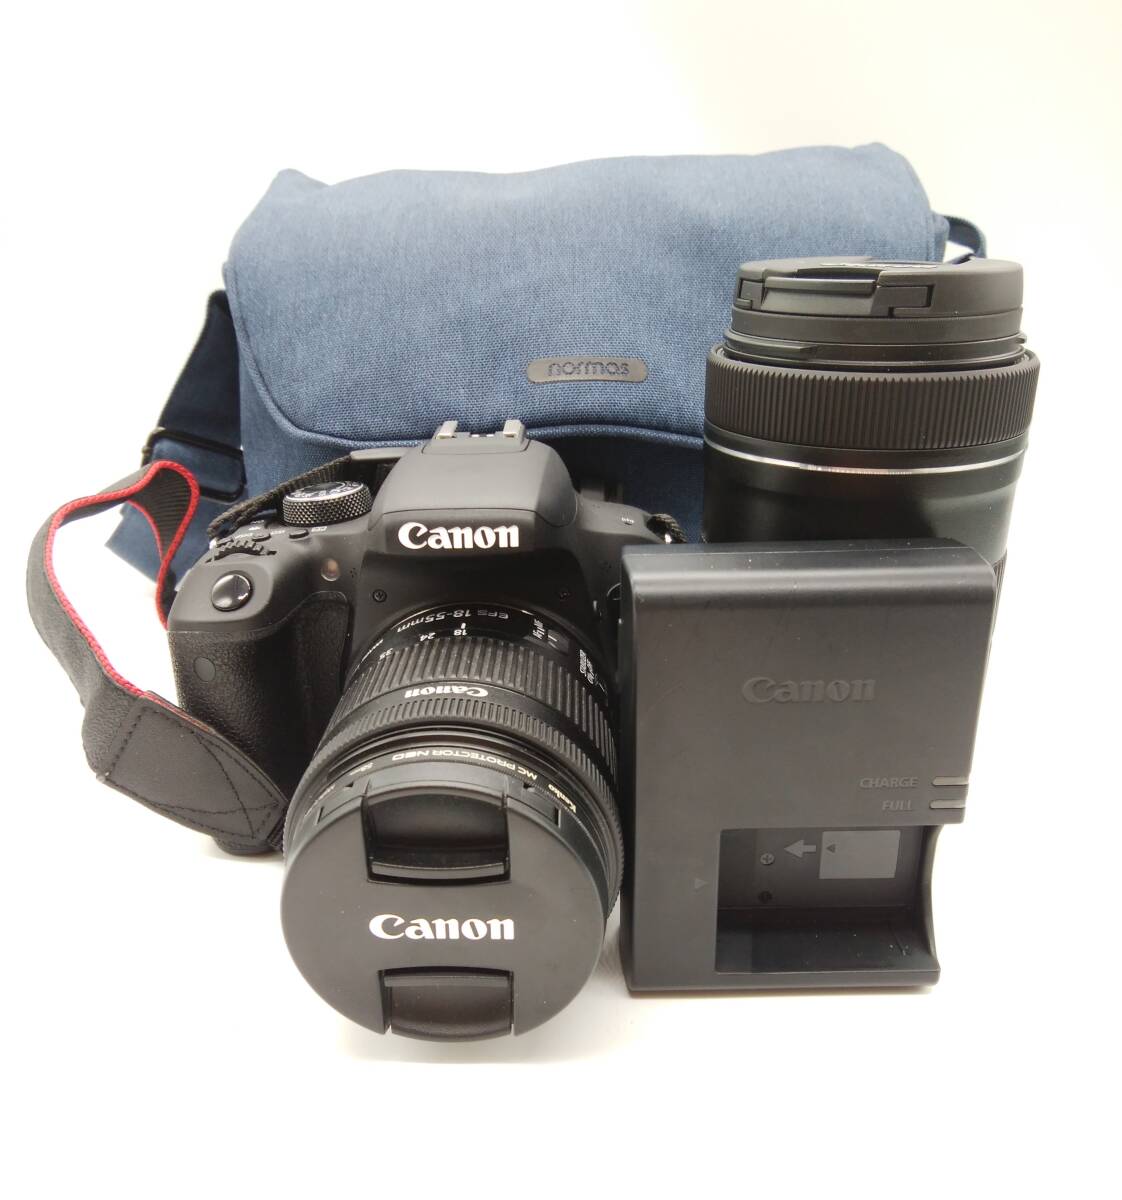 ■【動作OK】Canon キヤノン EOS kissX9i EF-S 18-55mm 1:4-5.6 55-250mm 1:4-5.6 カメラ ダブルレンズ